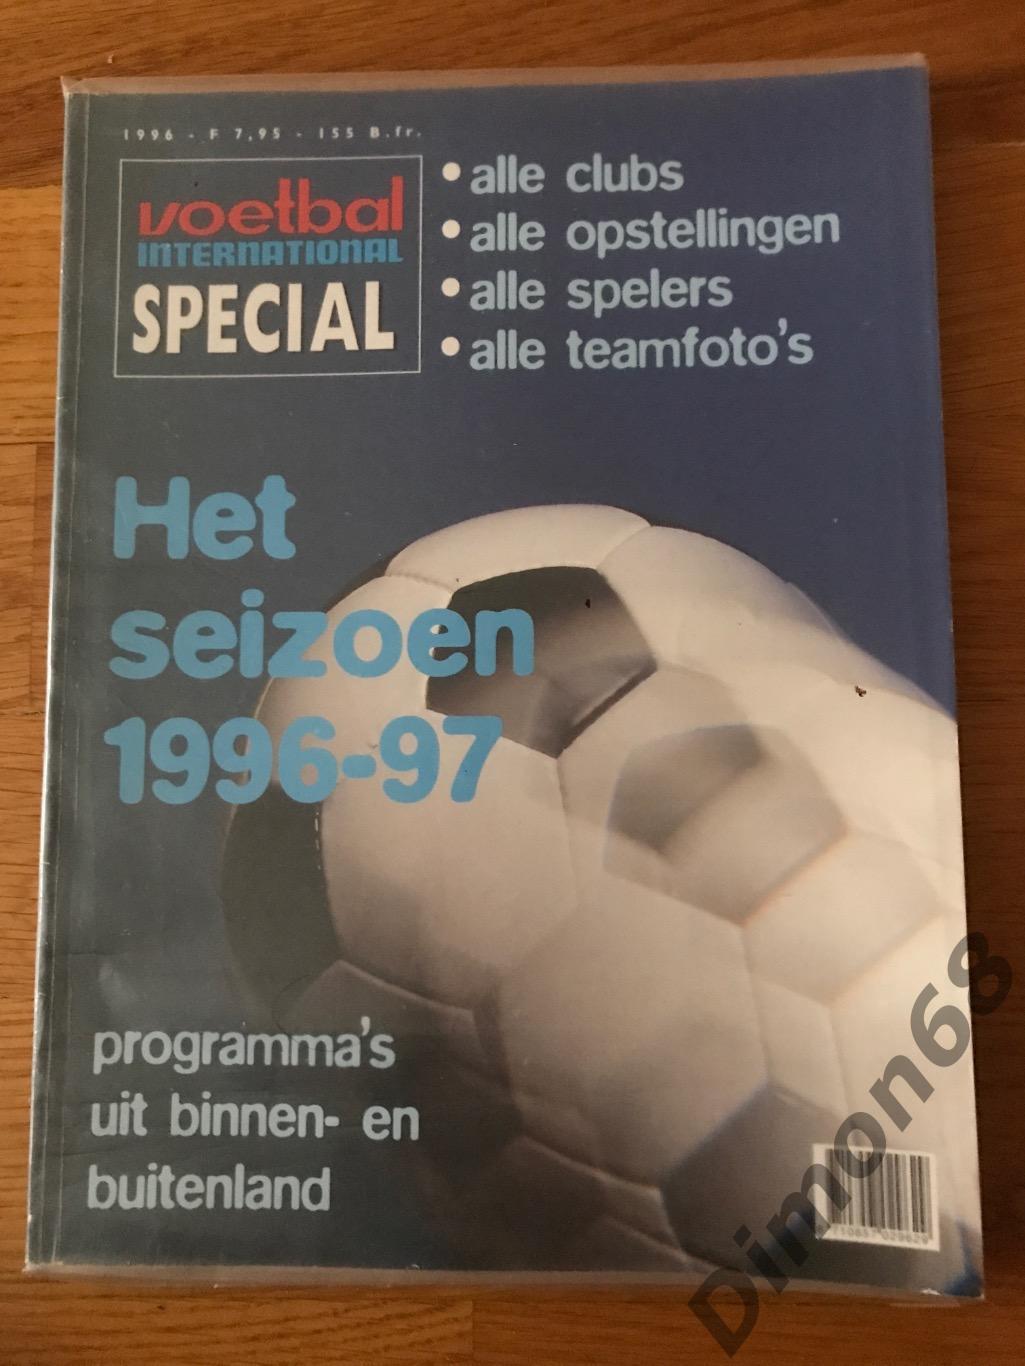 voetbal international special постеры чем голландии 96/97